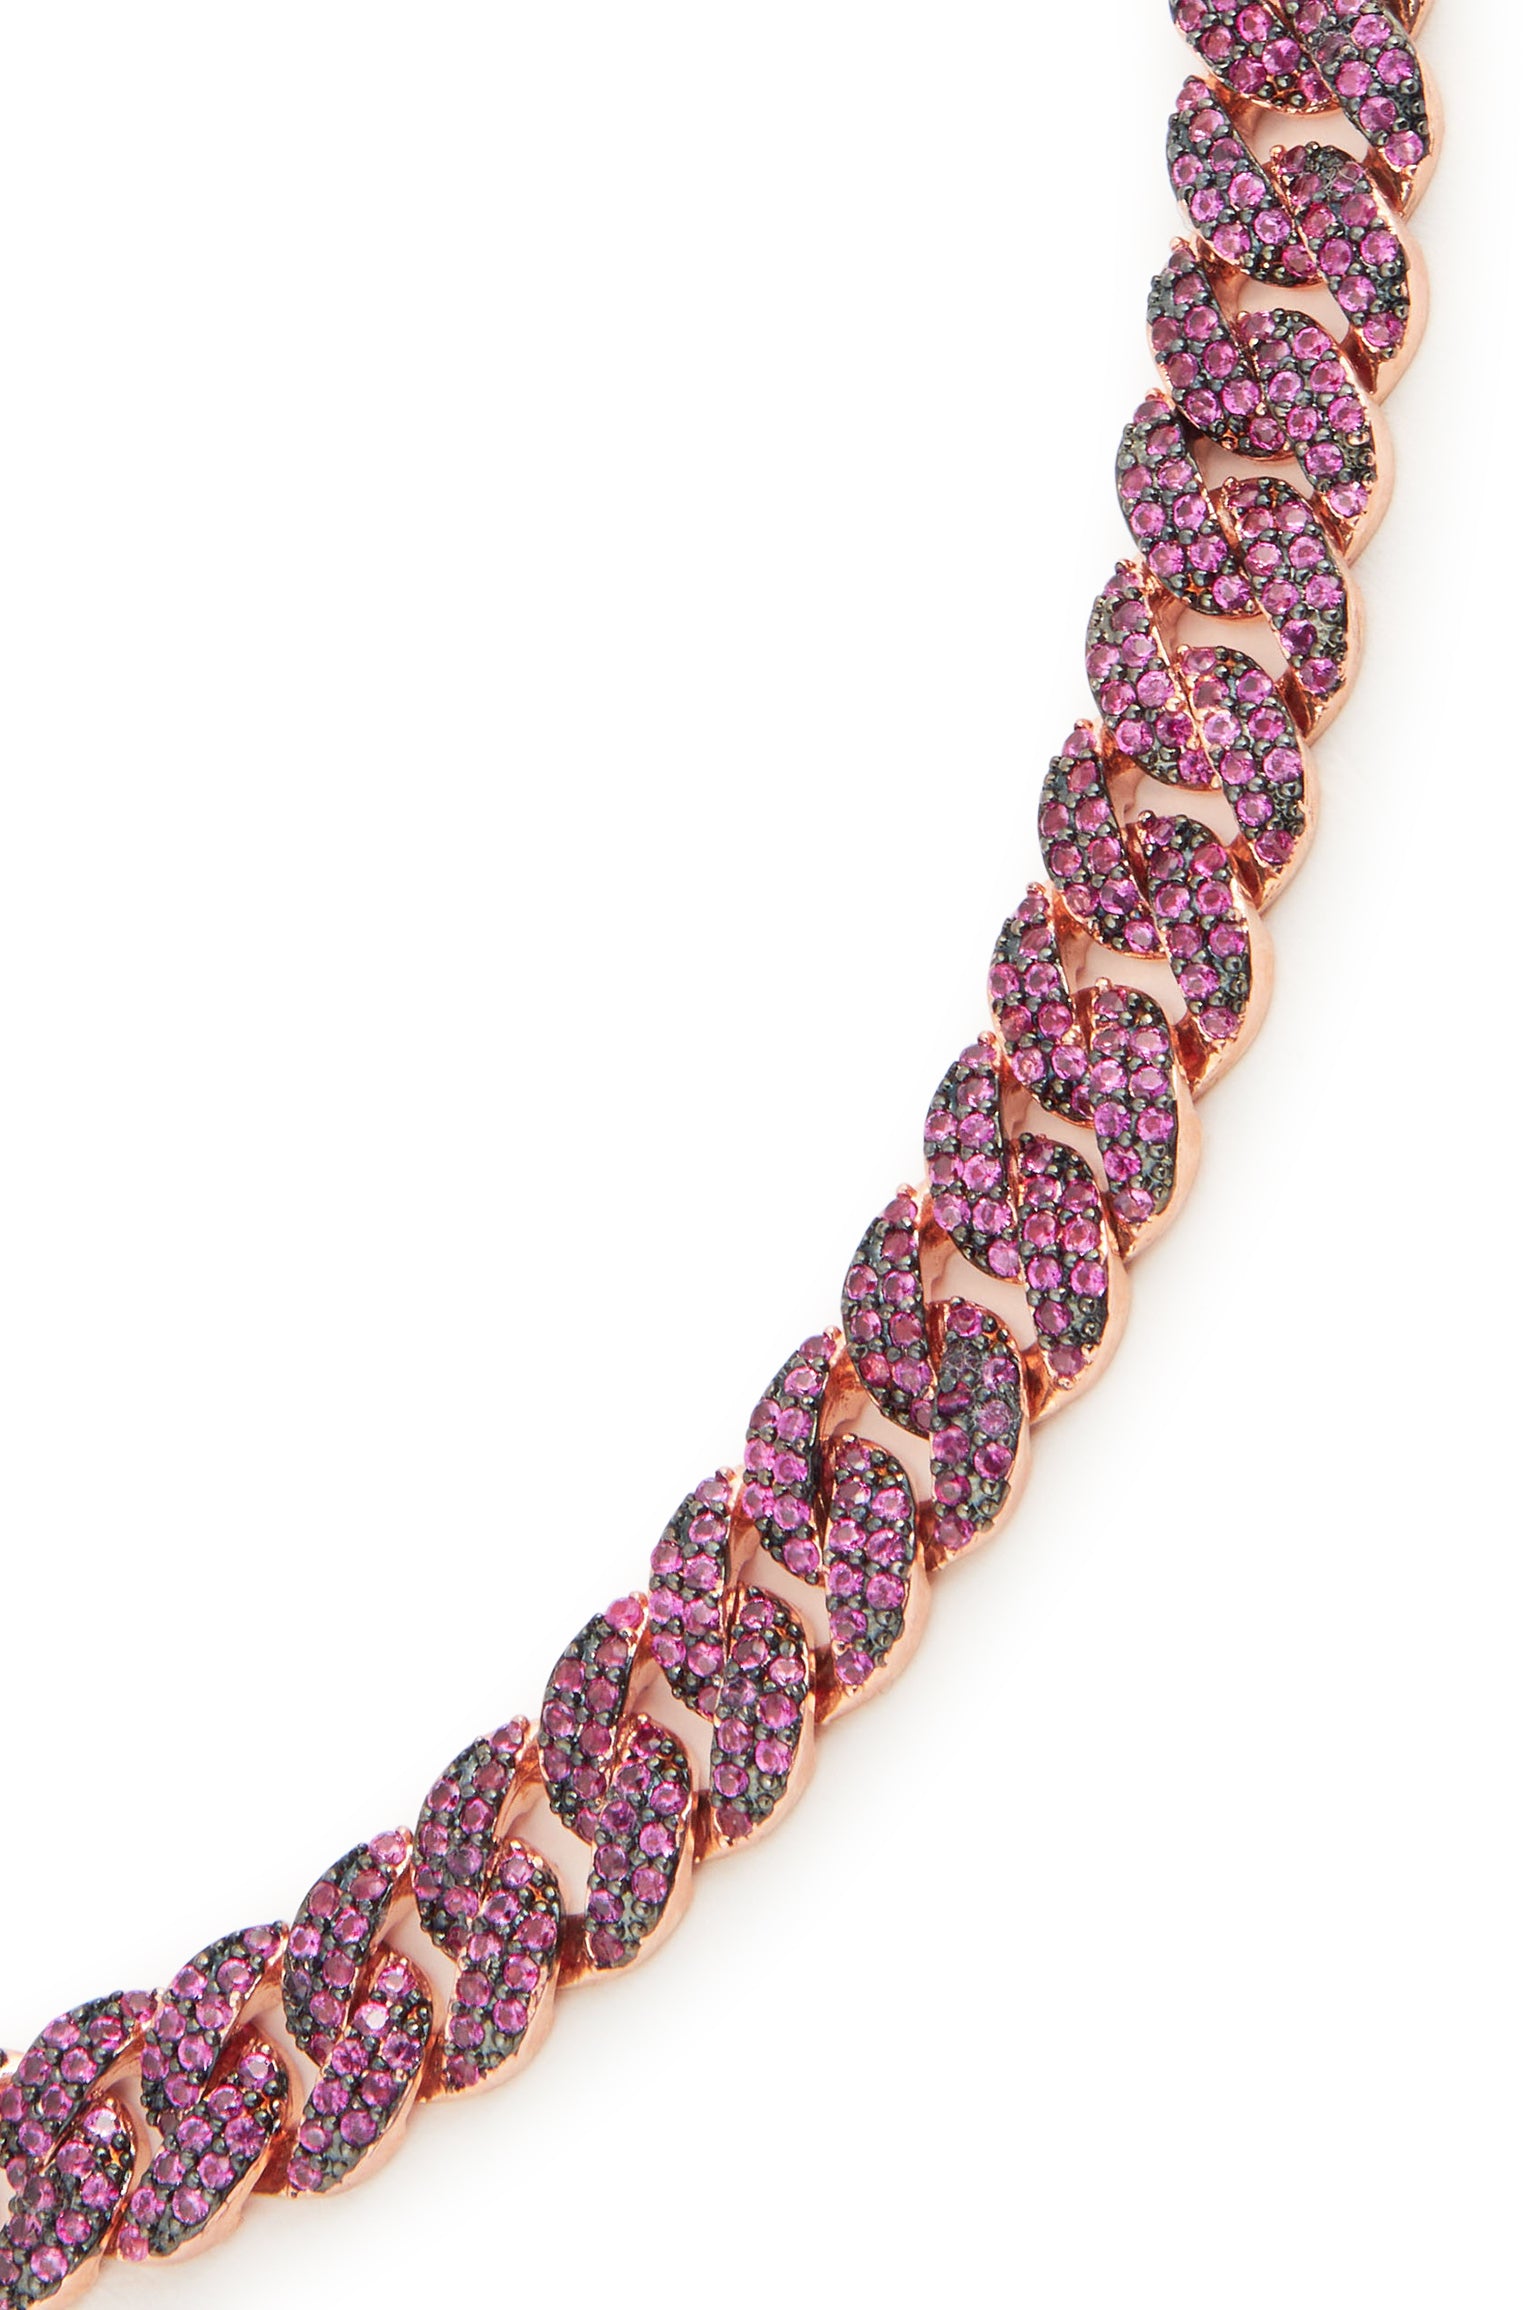 MELUSINA BIJOUX Bordeaux Chain Choker Necklace